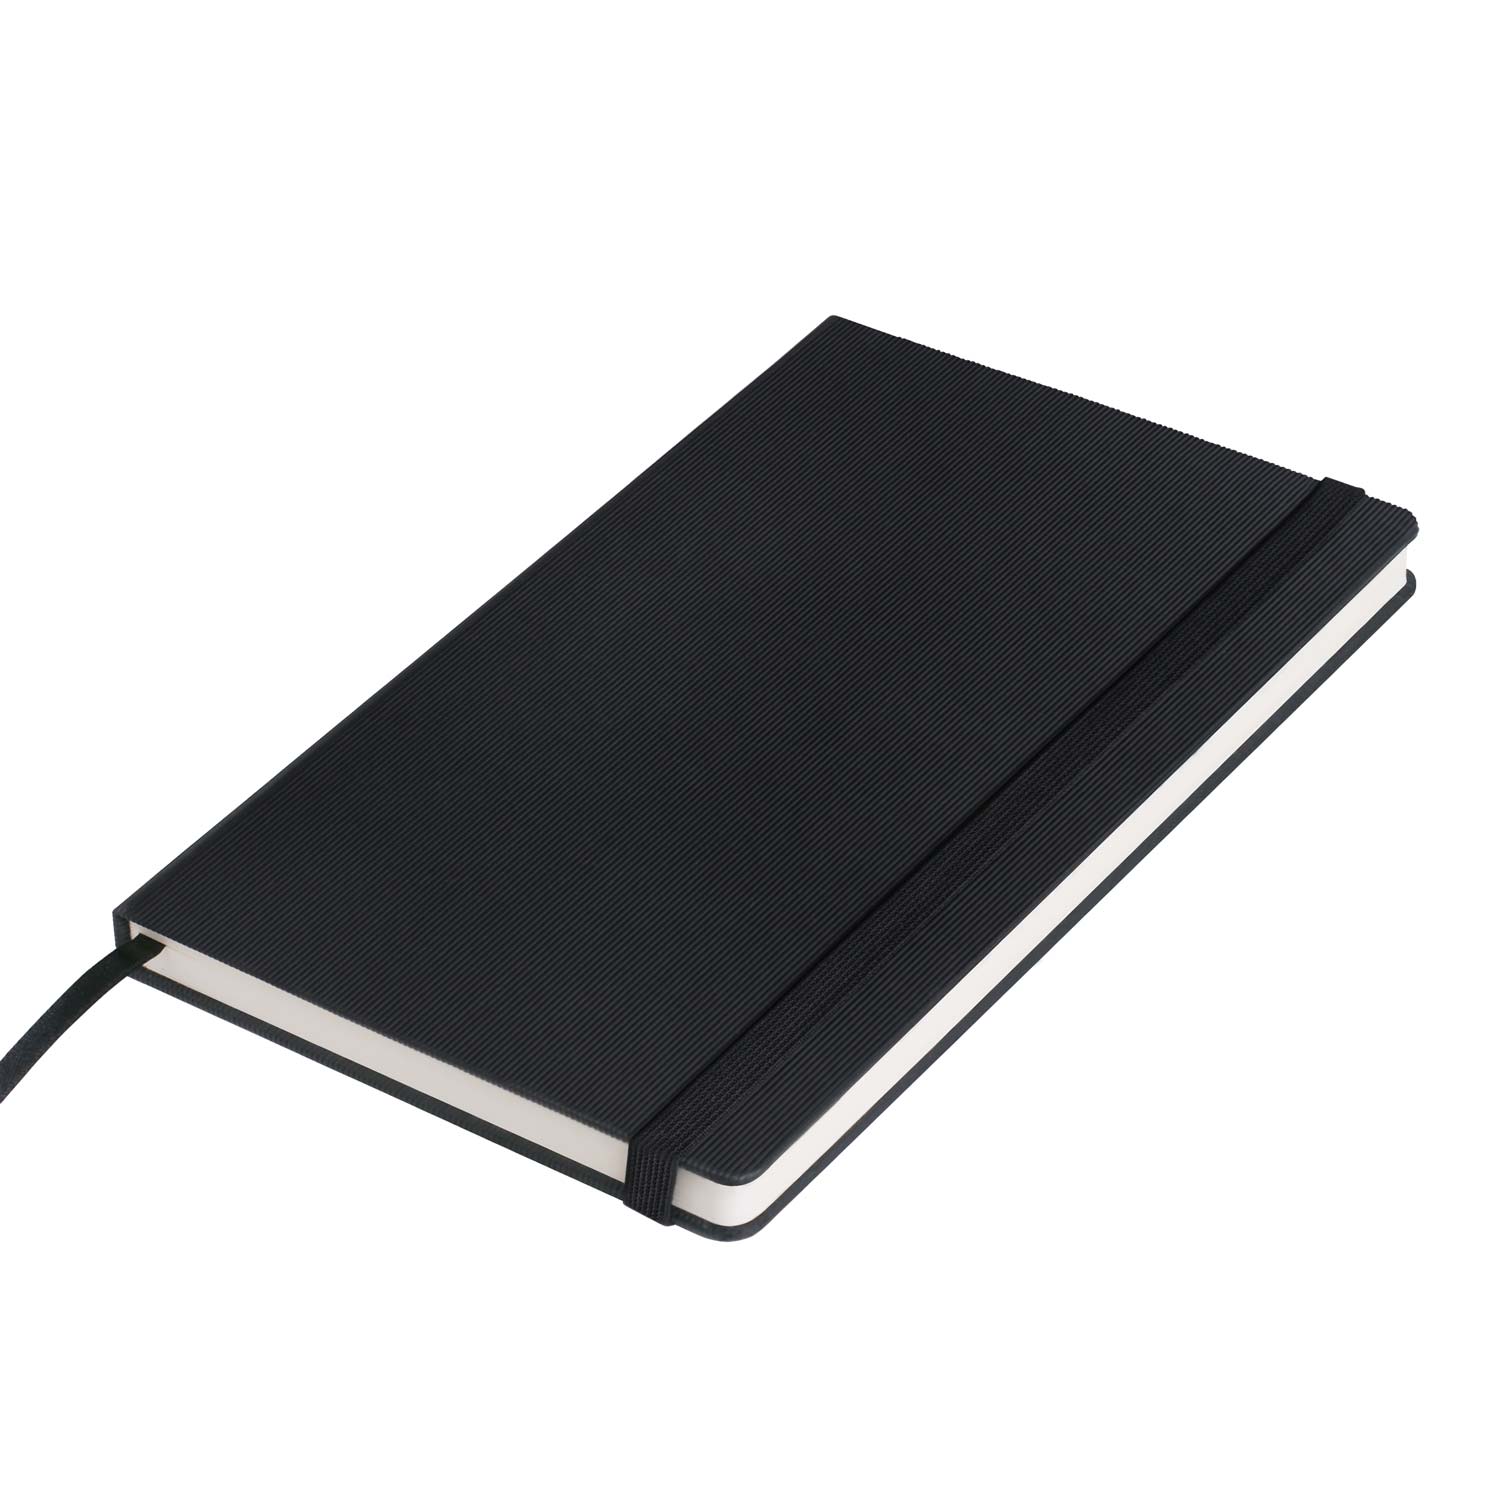 Ежедневник недатированный Rain BtoBook, черный (без упаковки, без стикера)